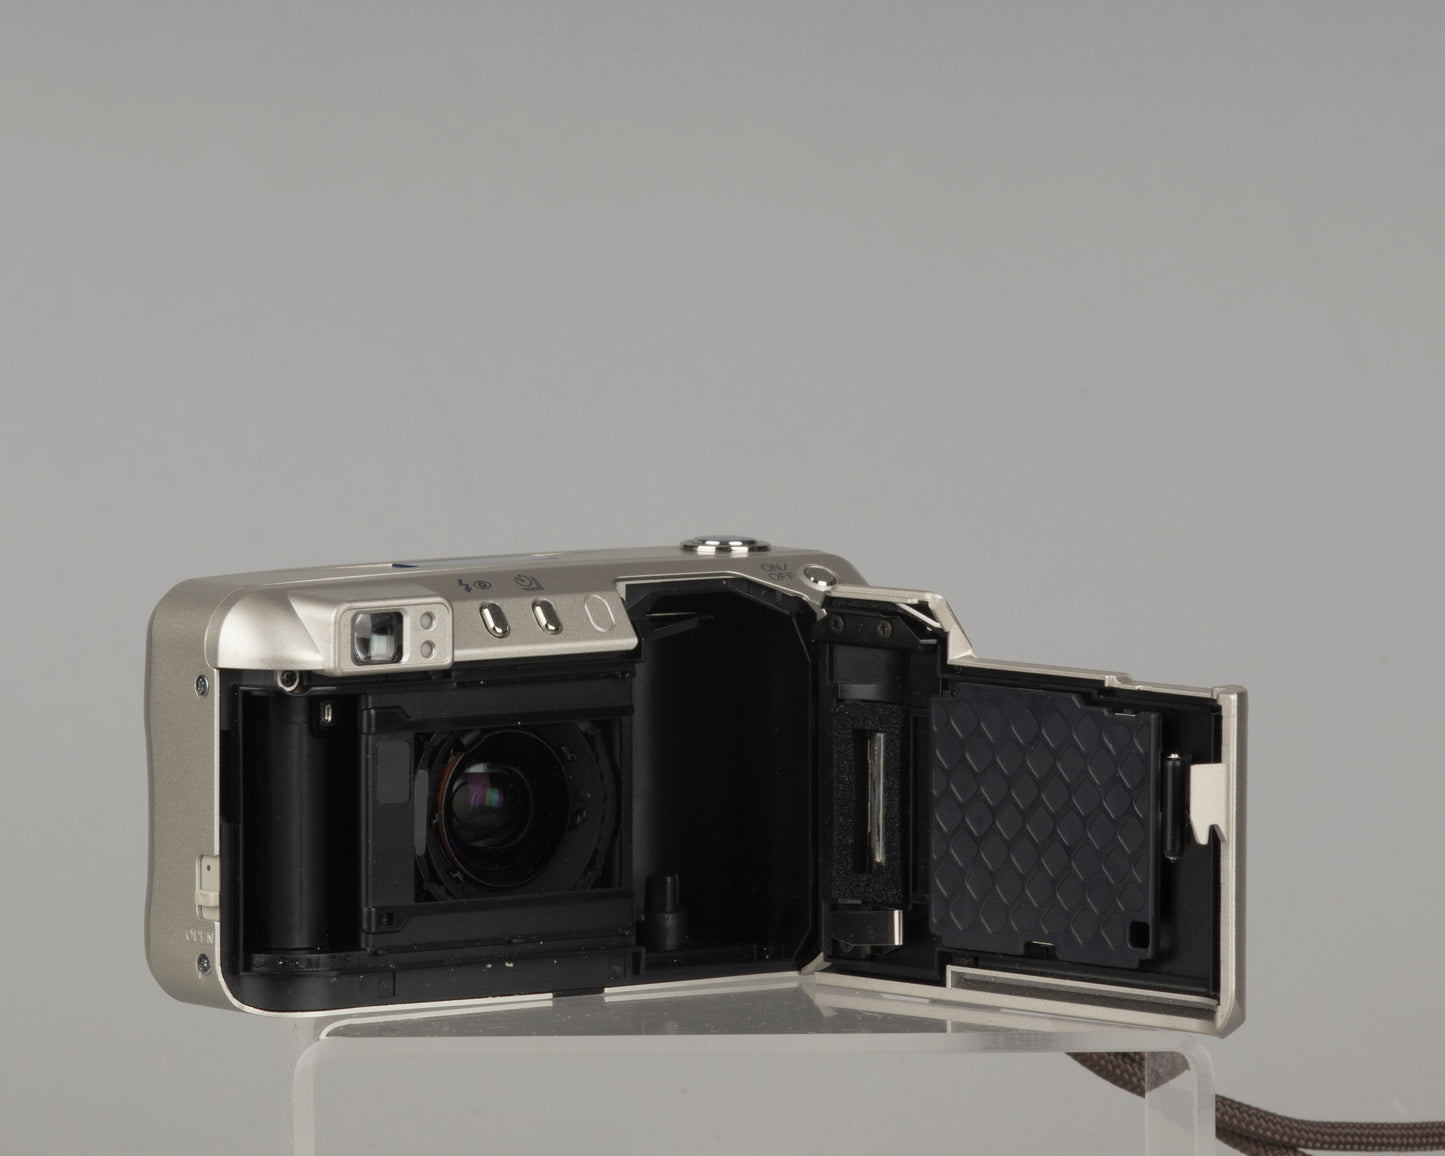 Minolta Freedom 150 35mm camera (serial 38034743)